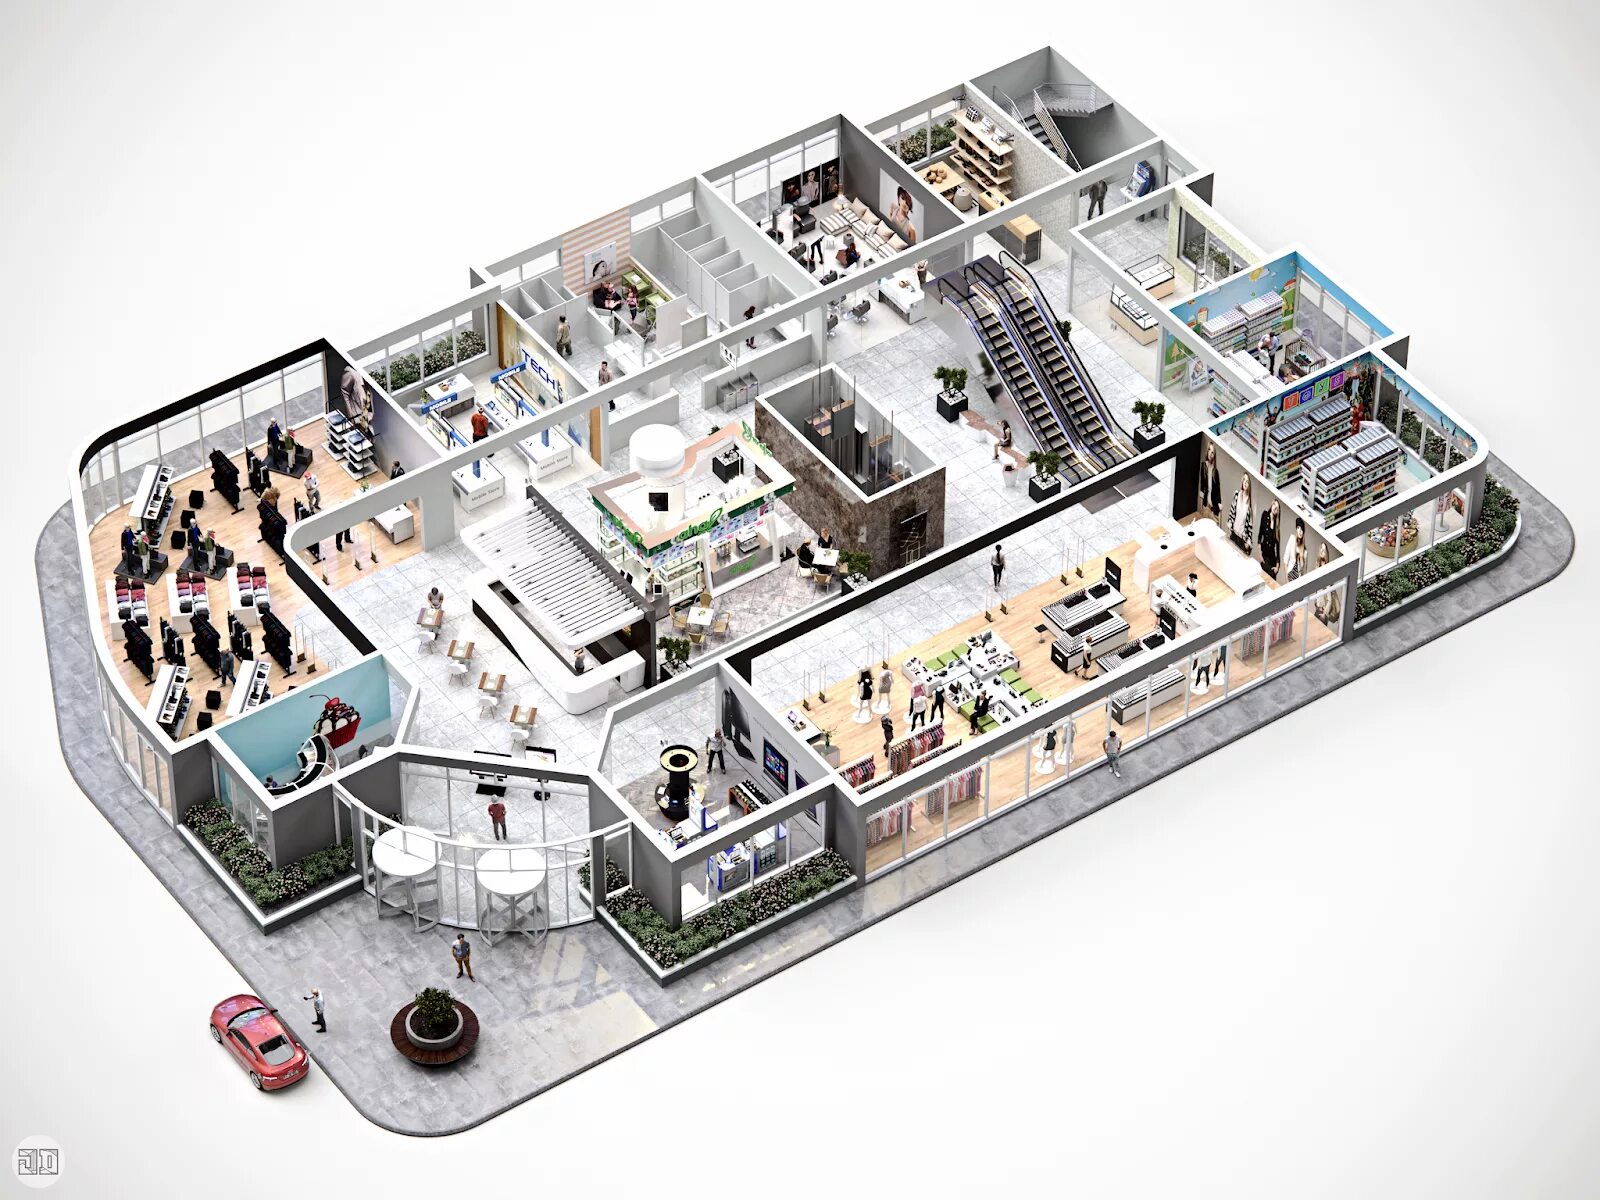 New shop build. Макет торгового центра. Интерактивный план здания. Трехмерная модель помещения. План магазина 3д.